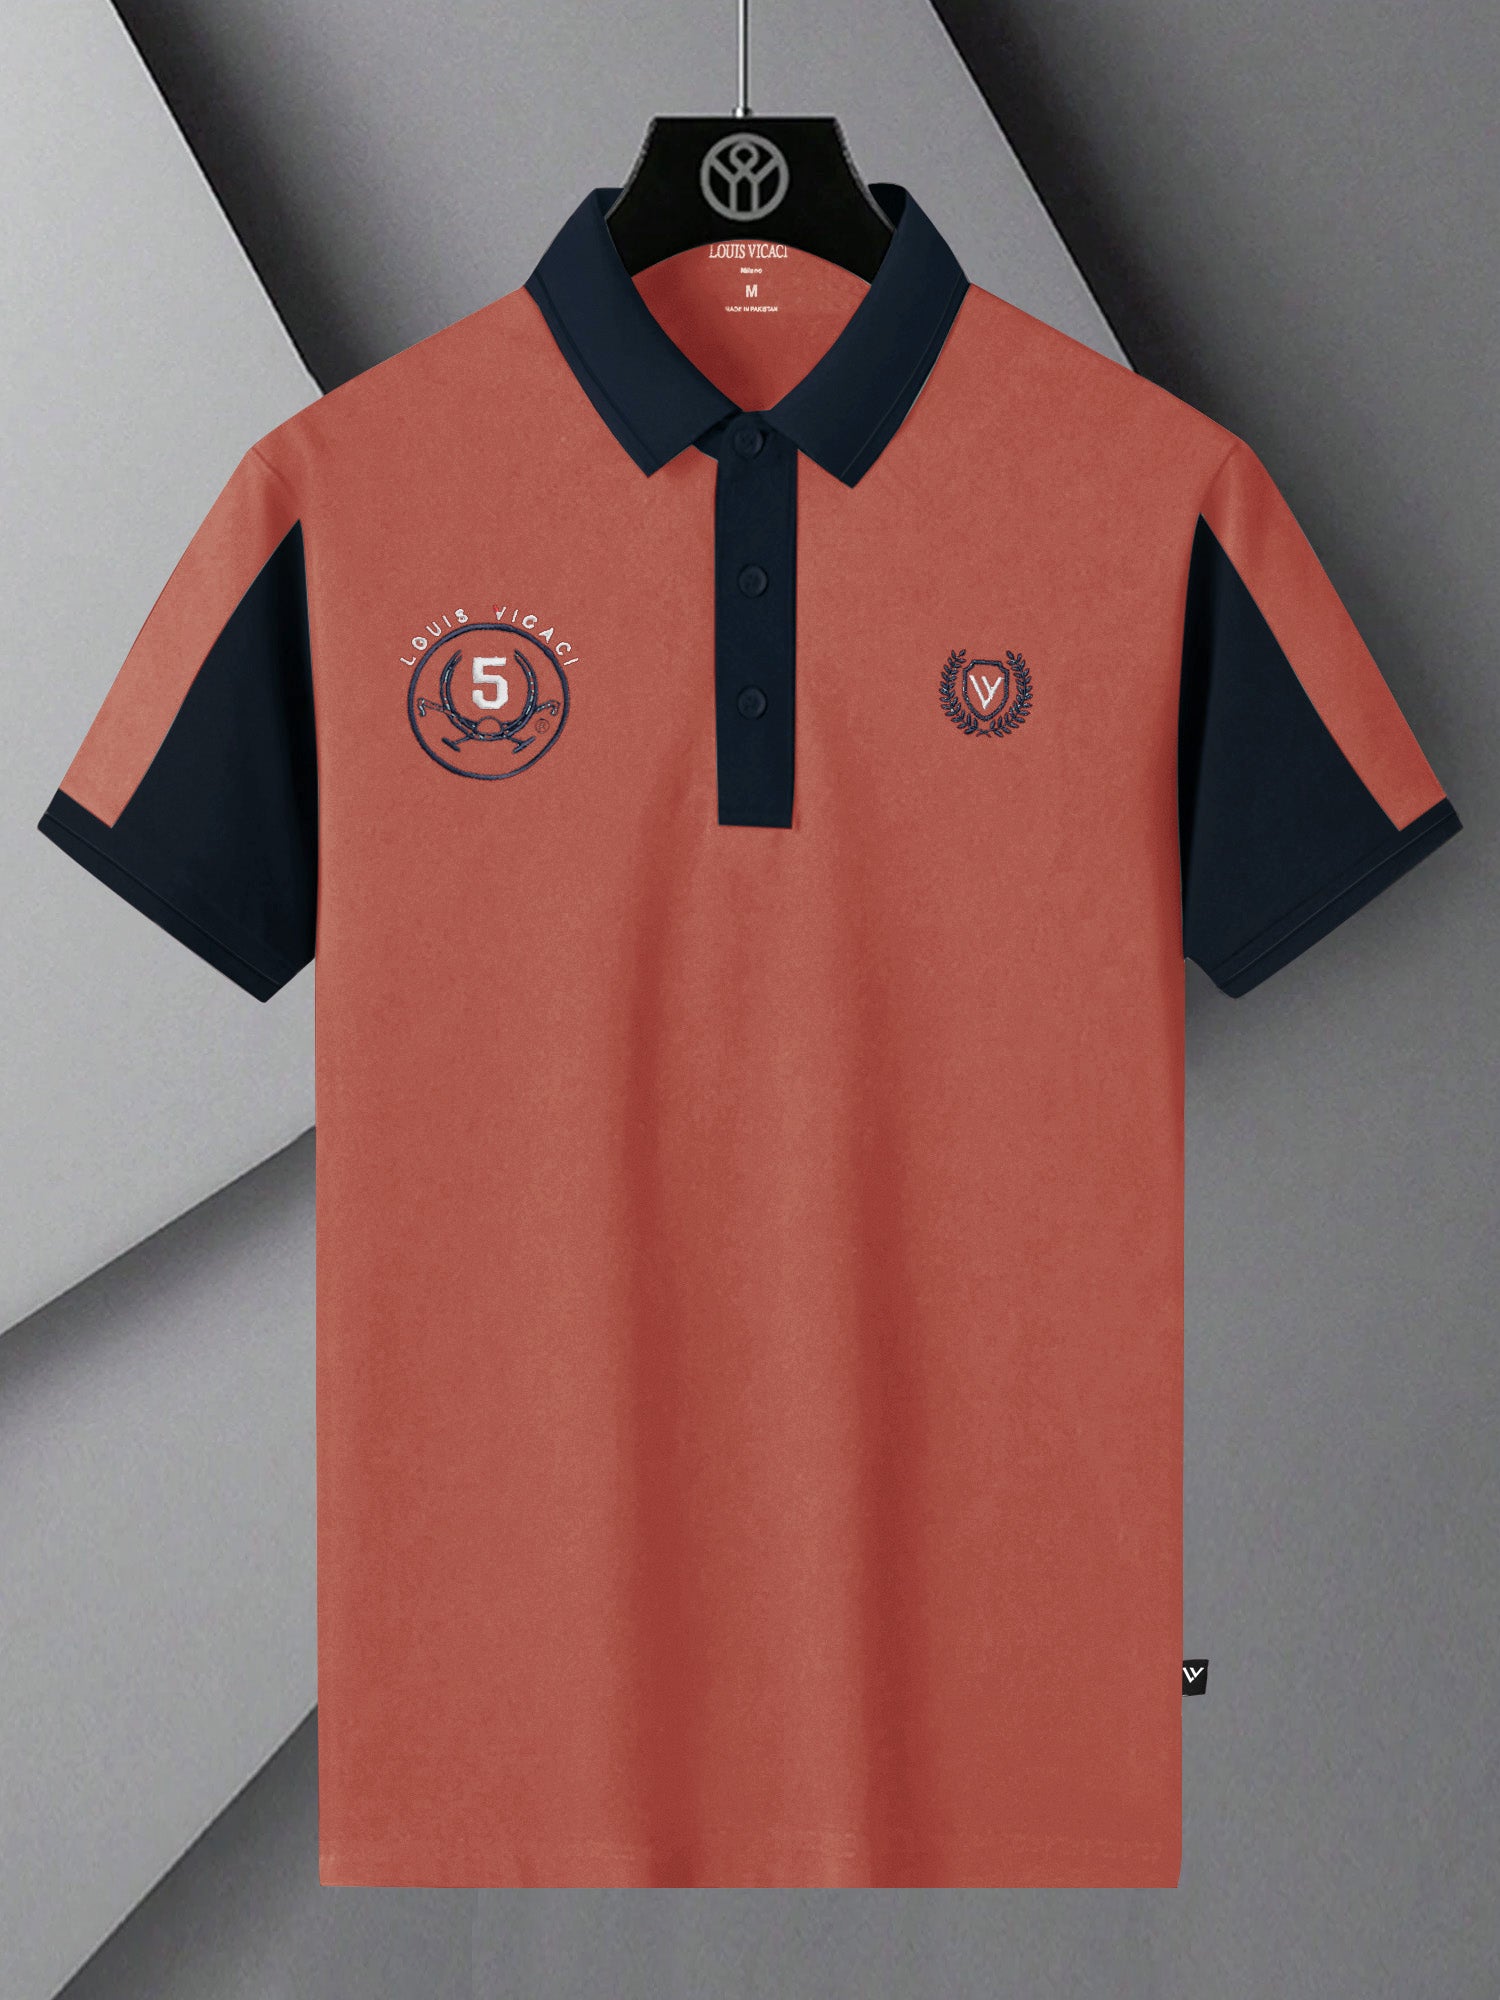 LV Summer Polo Shirt For Men-Carrot Red & Dark Navy-SP1546/RT2366